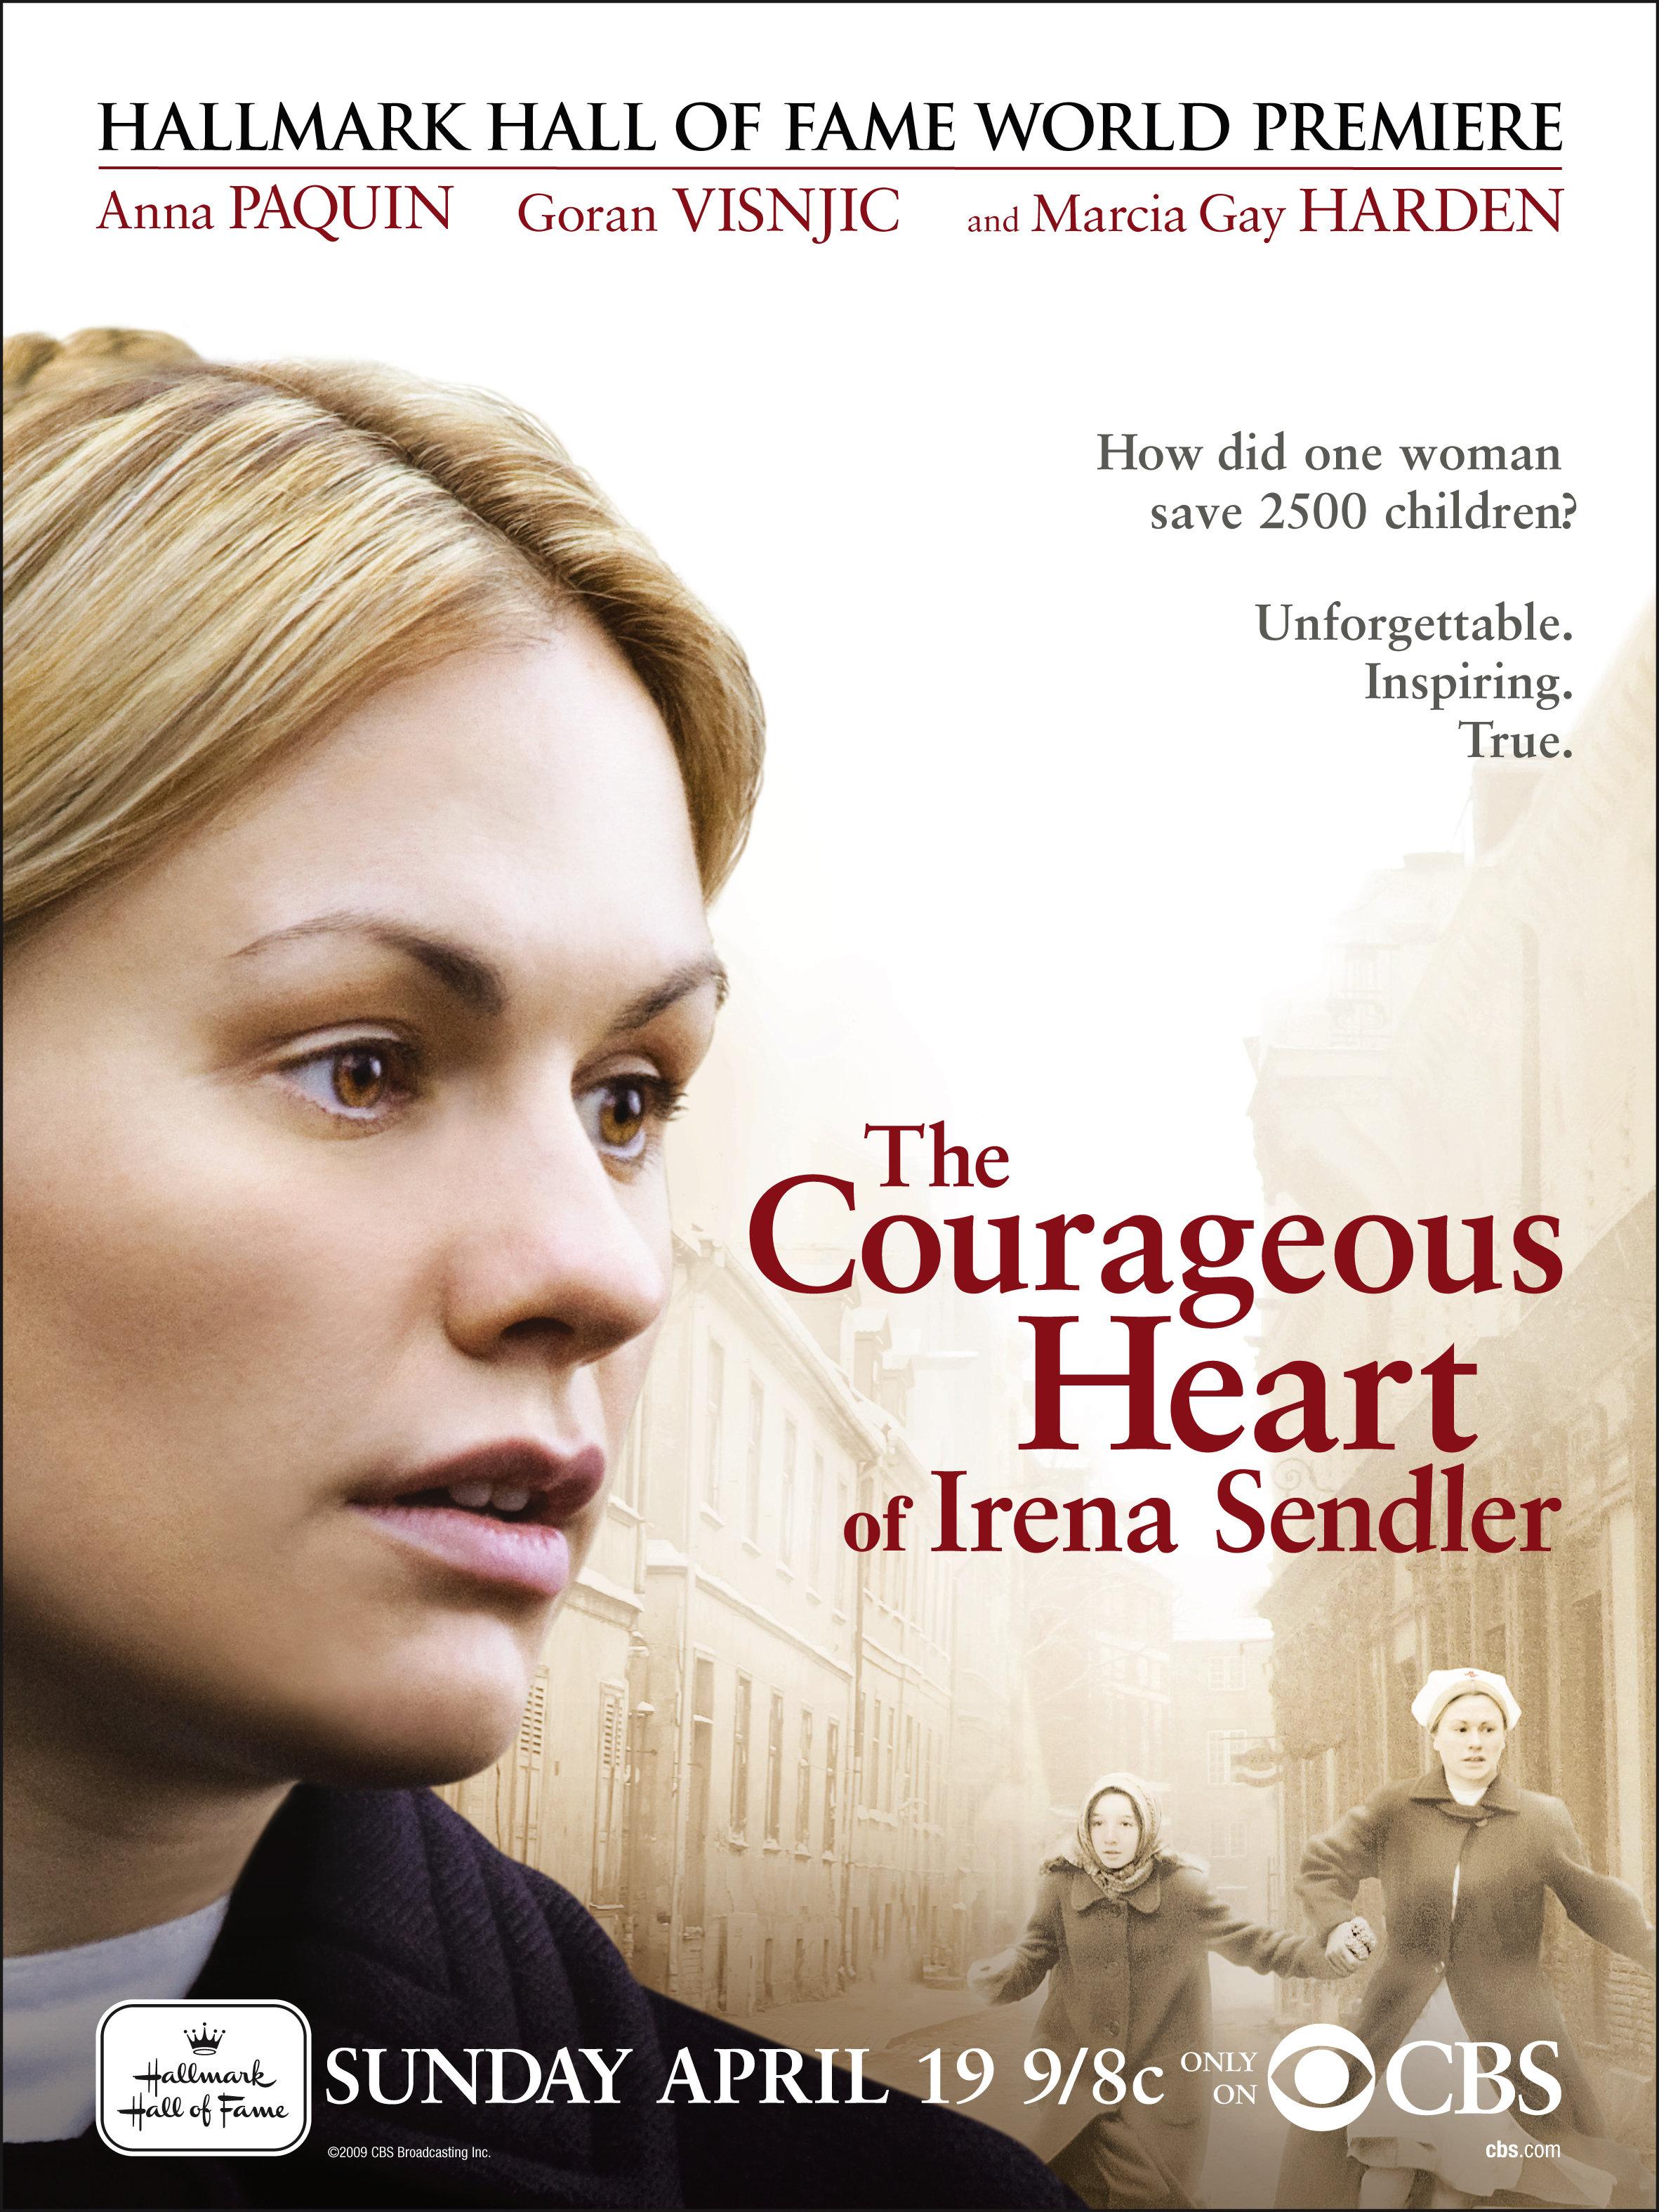 Постер - Храброе сердце Ирены Сендлер: 2363x3150 / 741.7 Кб